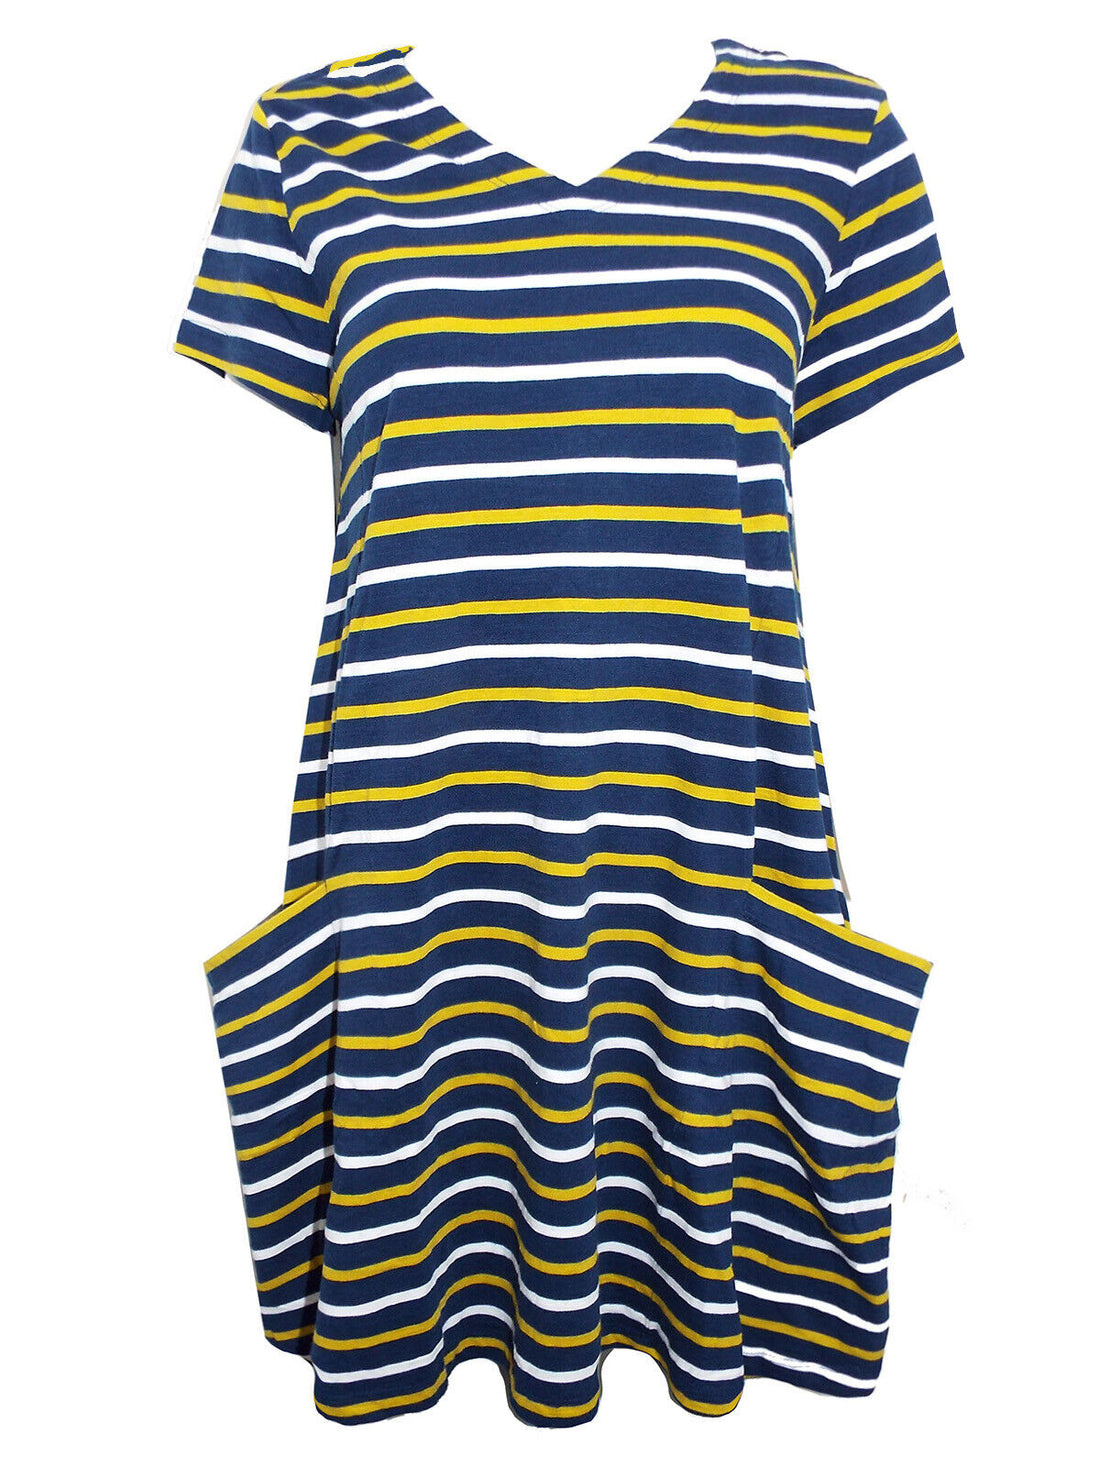 EX Seasalt Stripe Clear Light Dress in Size 10